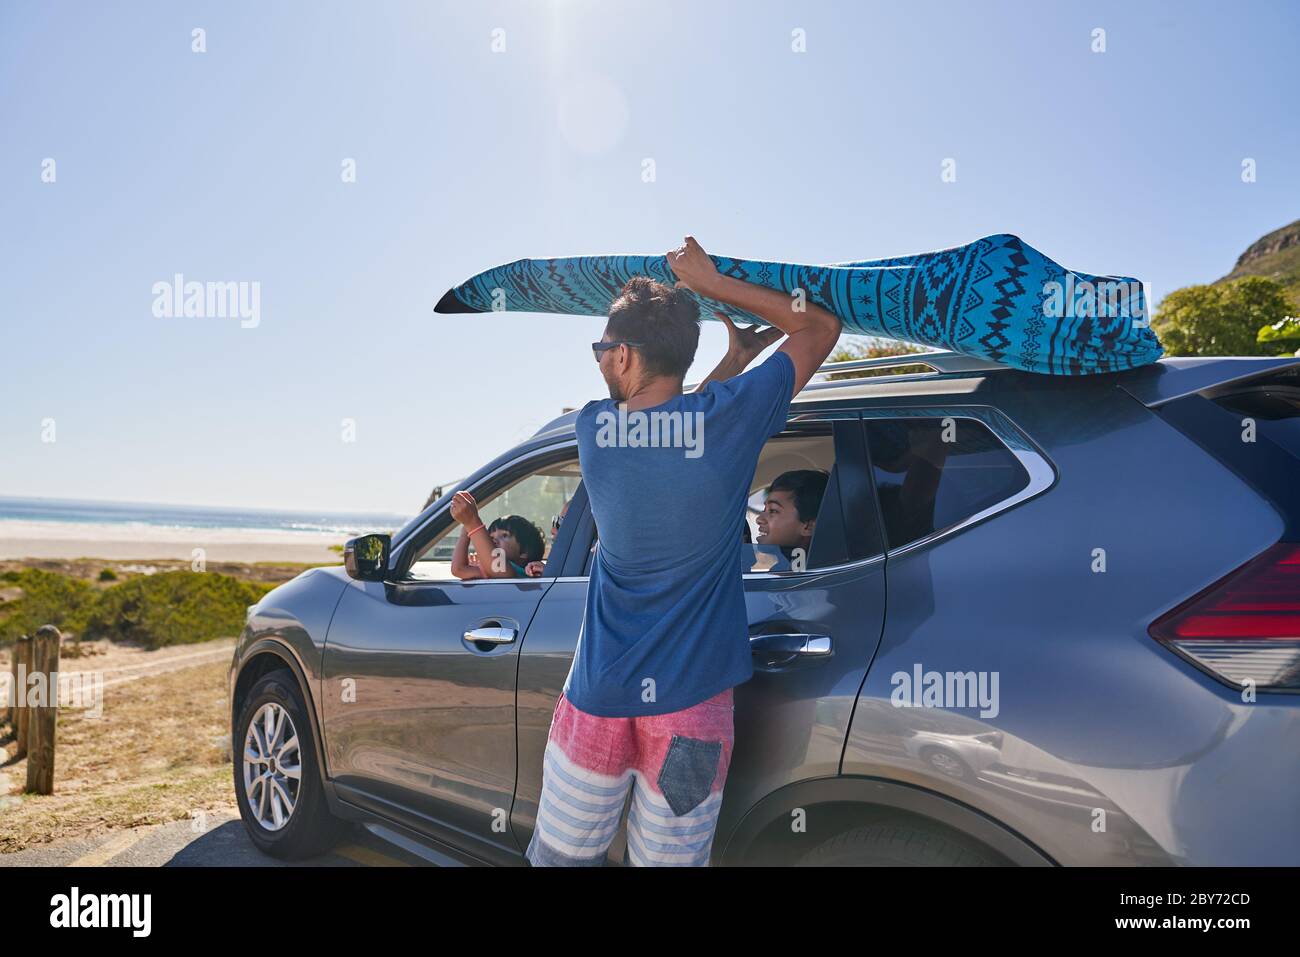 Mann, der Surfbrett vom Auto entfernt, auf dem Parkplatz am Strand Stockfoto